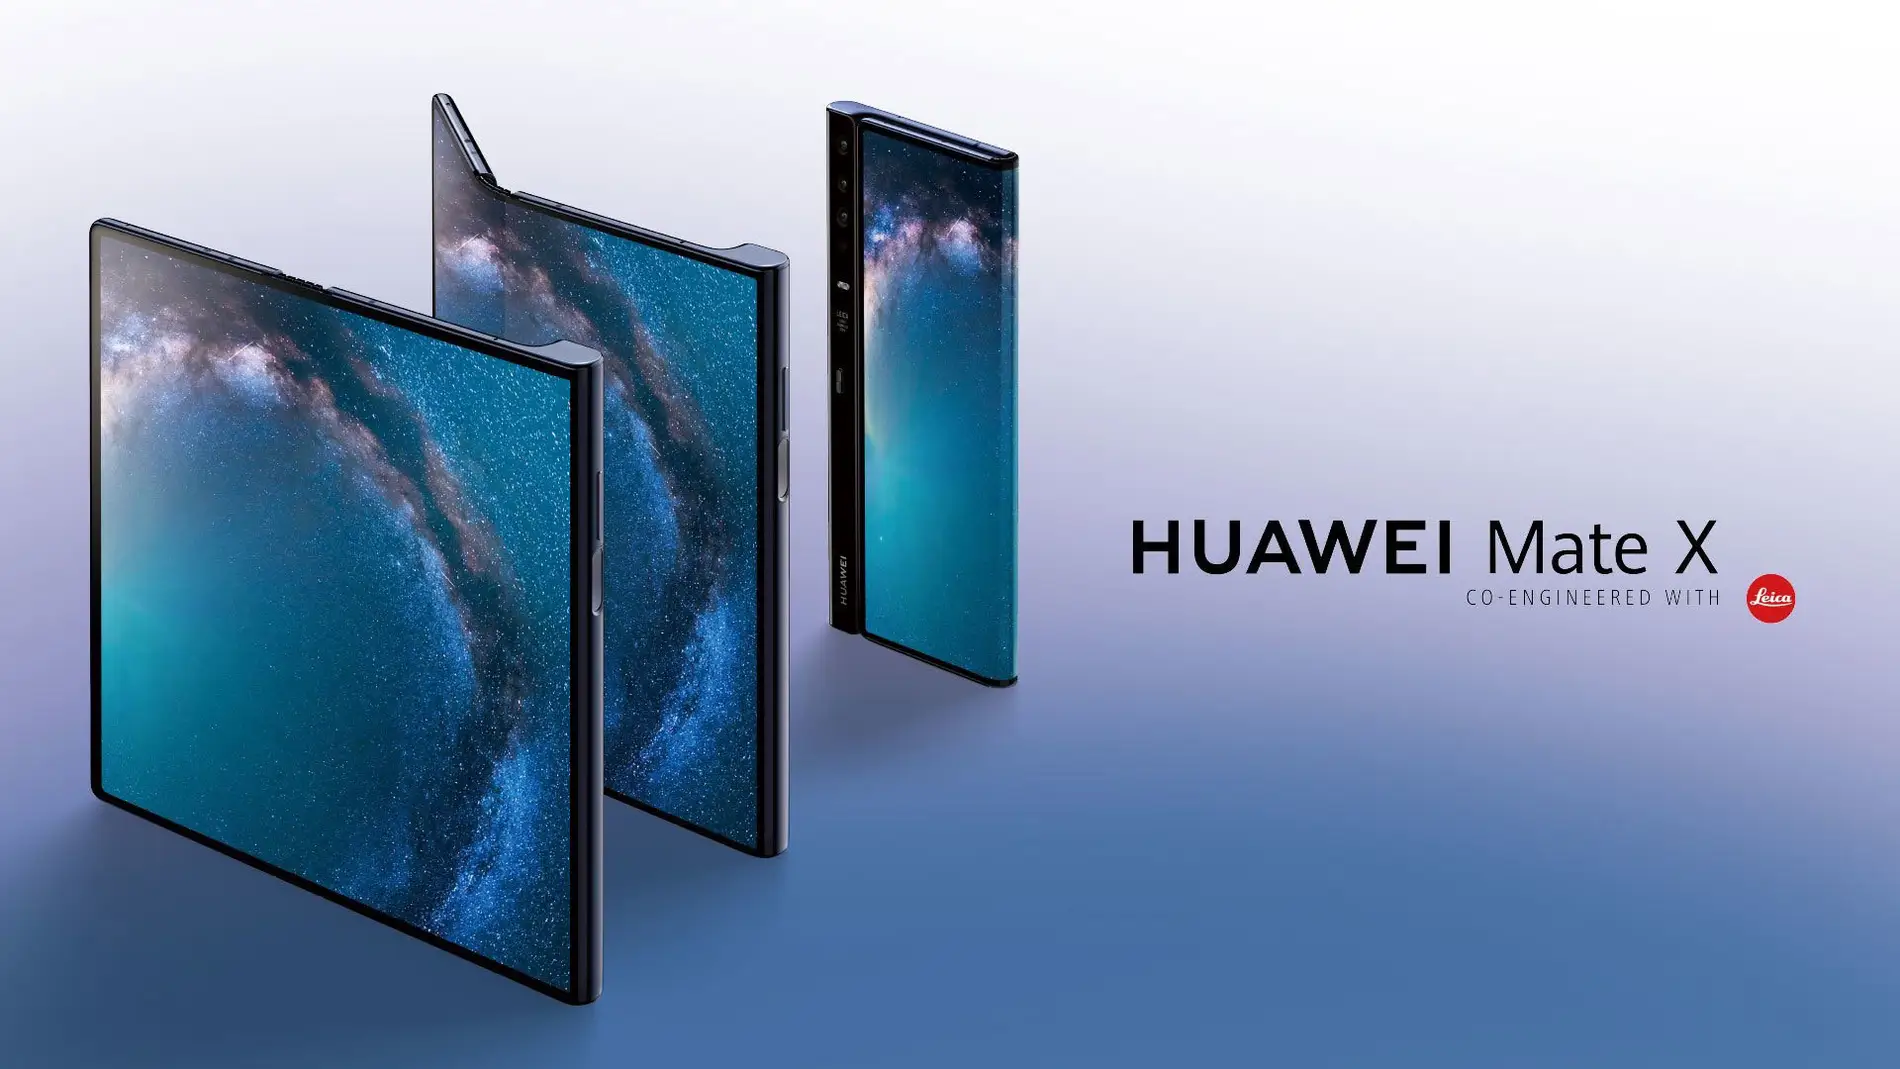 El Huawei Mate X es el terminal plegable que más ha llamado la atención durante el MWC19